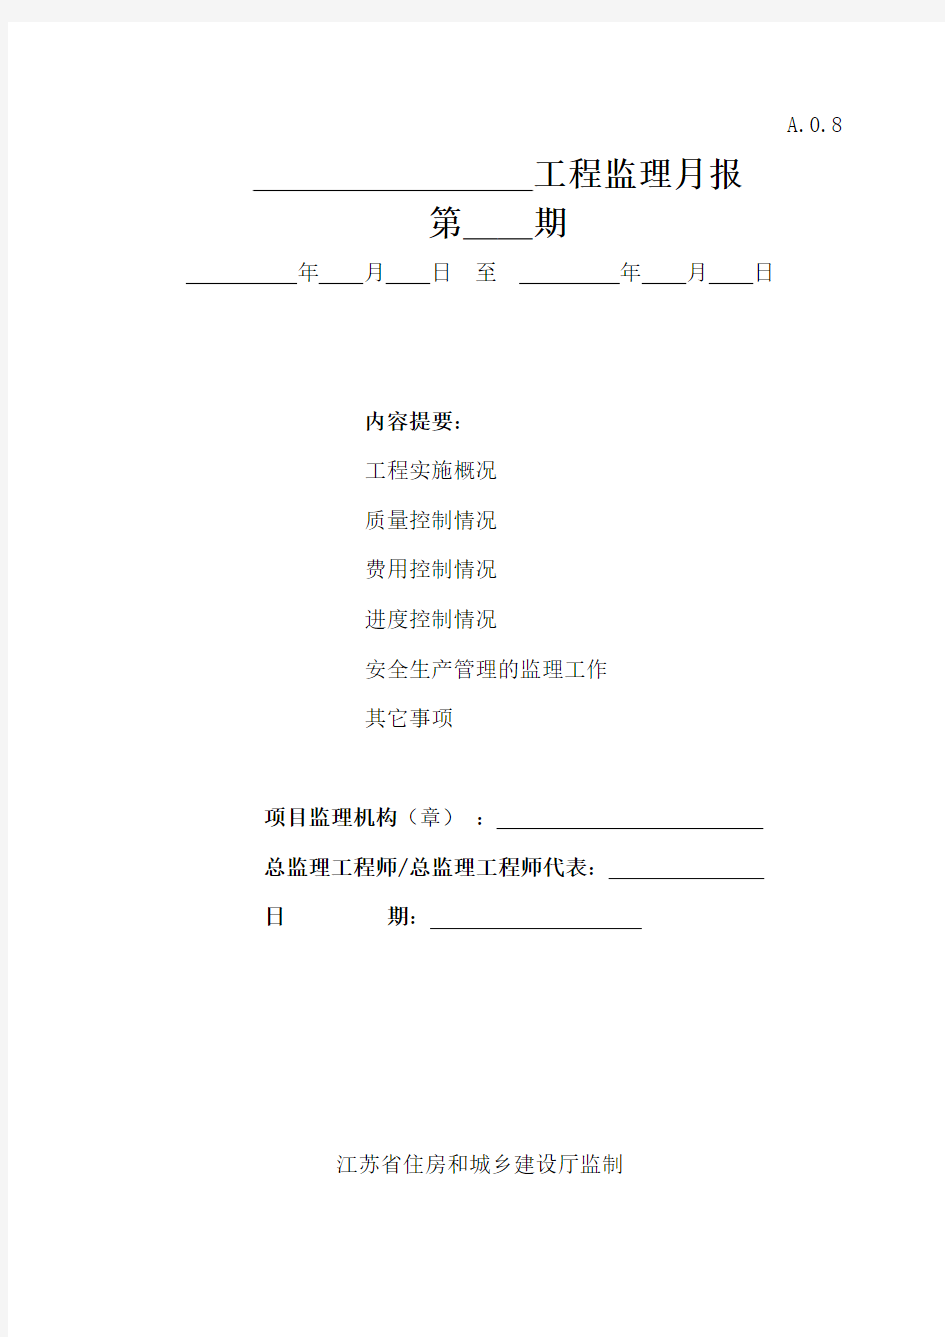 江苏省建设工程监理  现场用表(第五版)监理月报